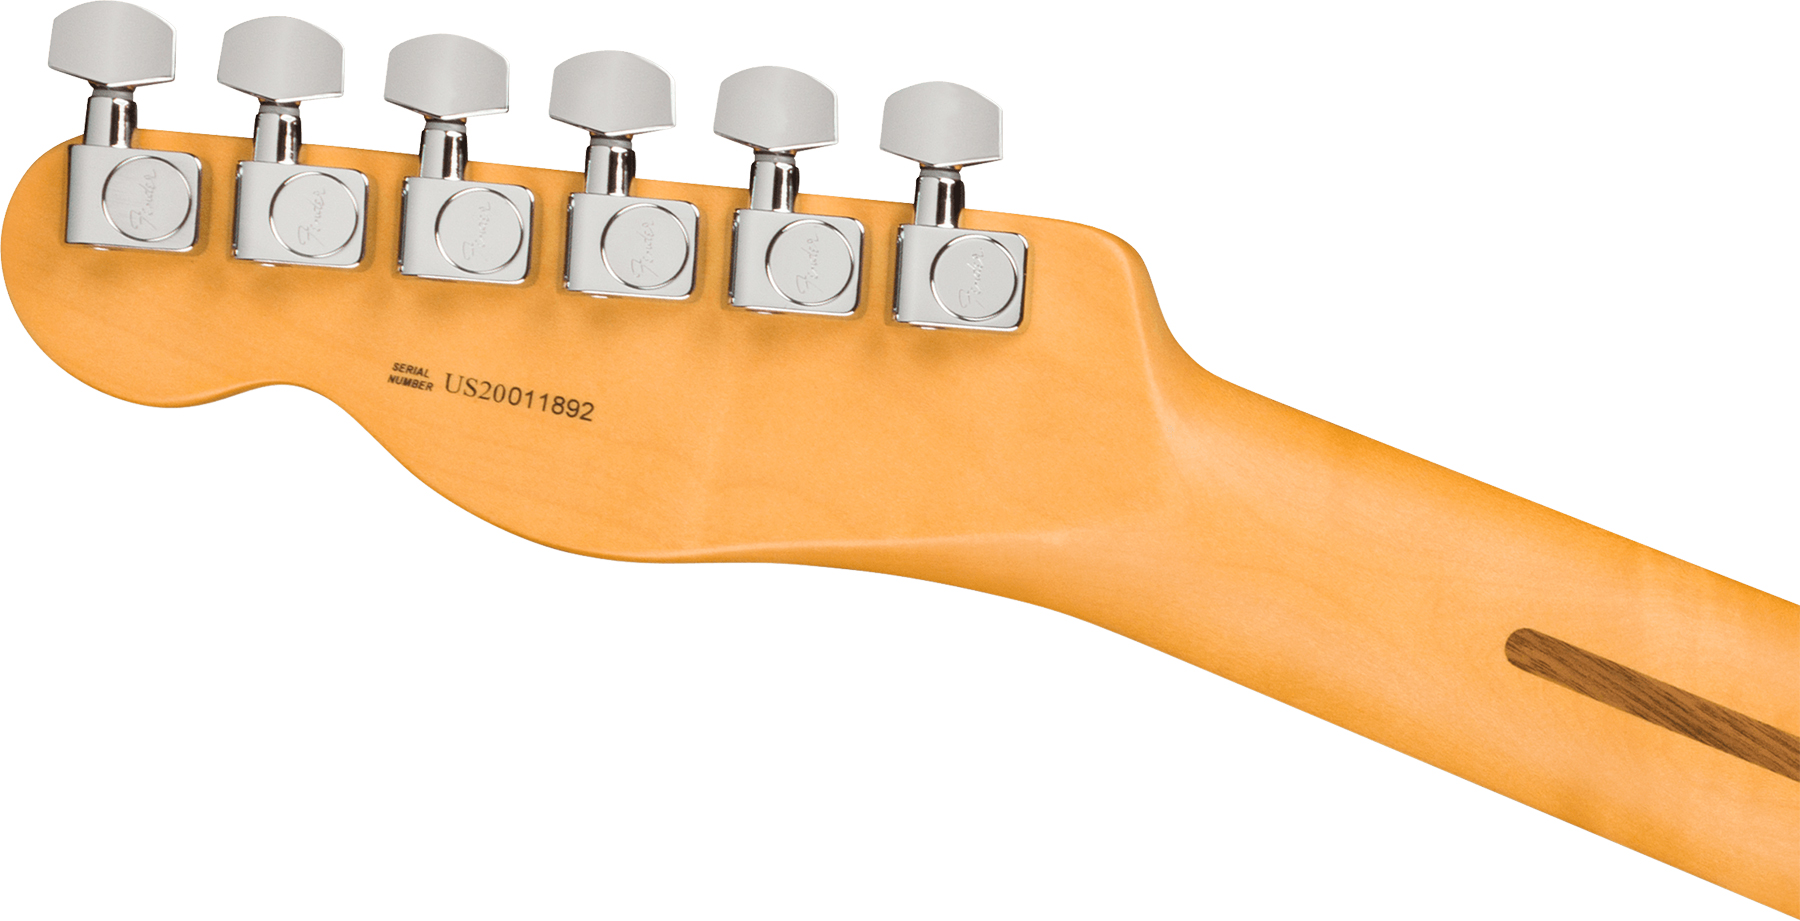 Fender Tele American Professional Ii Usa Rw - Mercury - Guitarra eléctrica con forma de tel - Variation 2